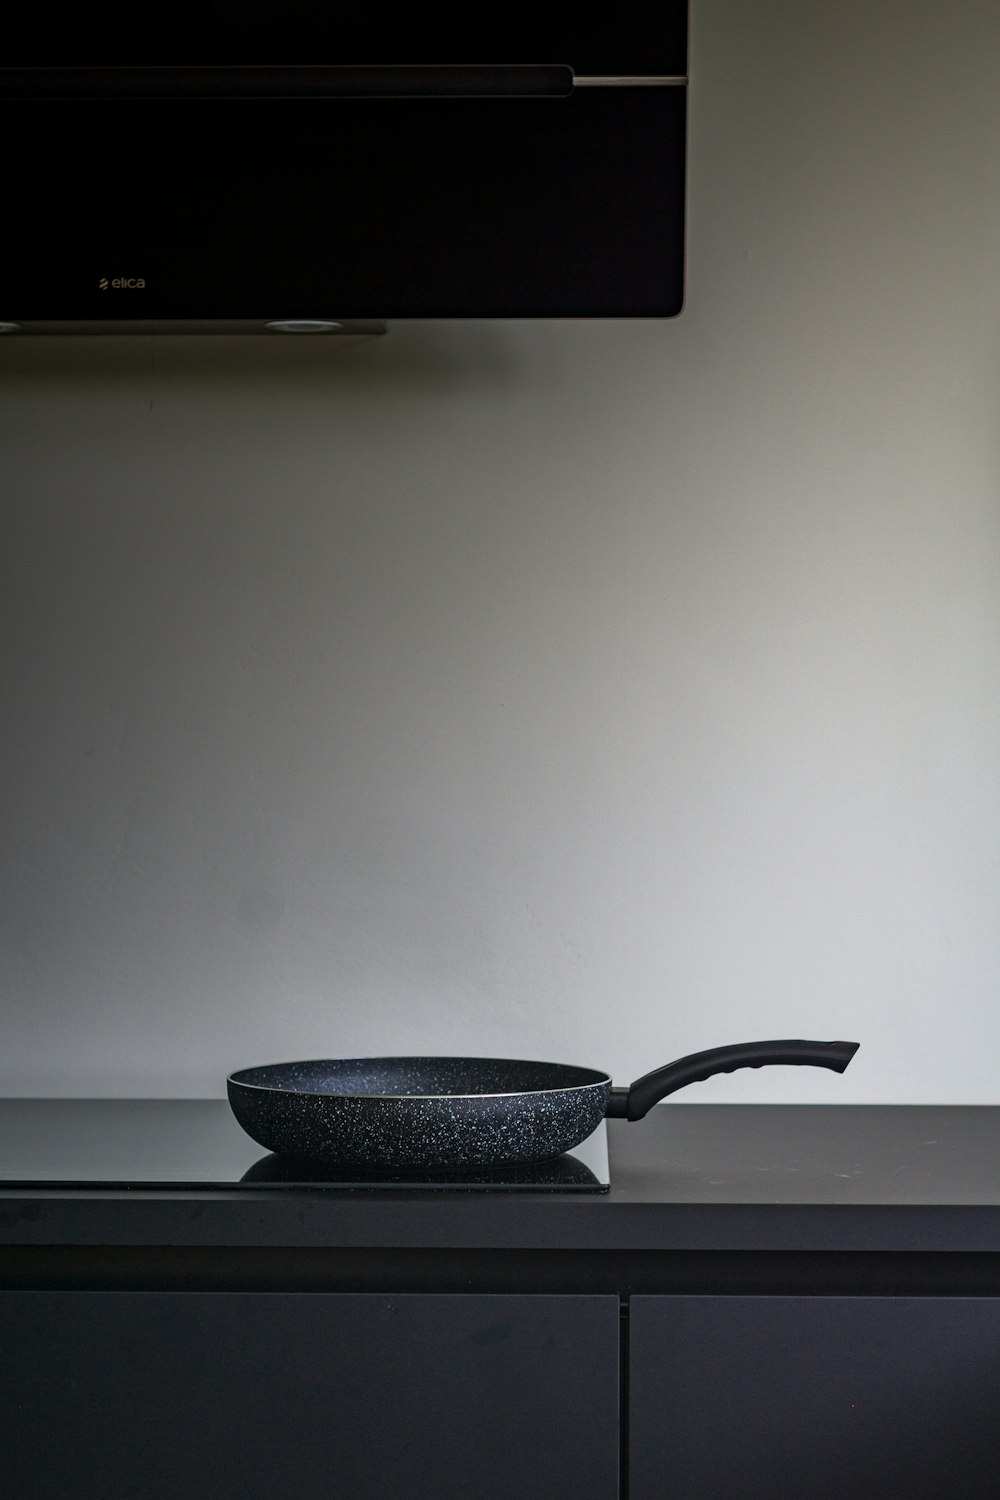 black ceramic bowl on white table